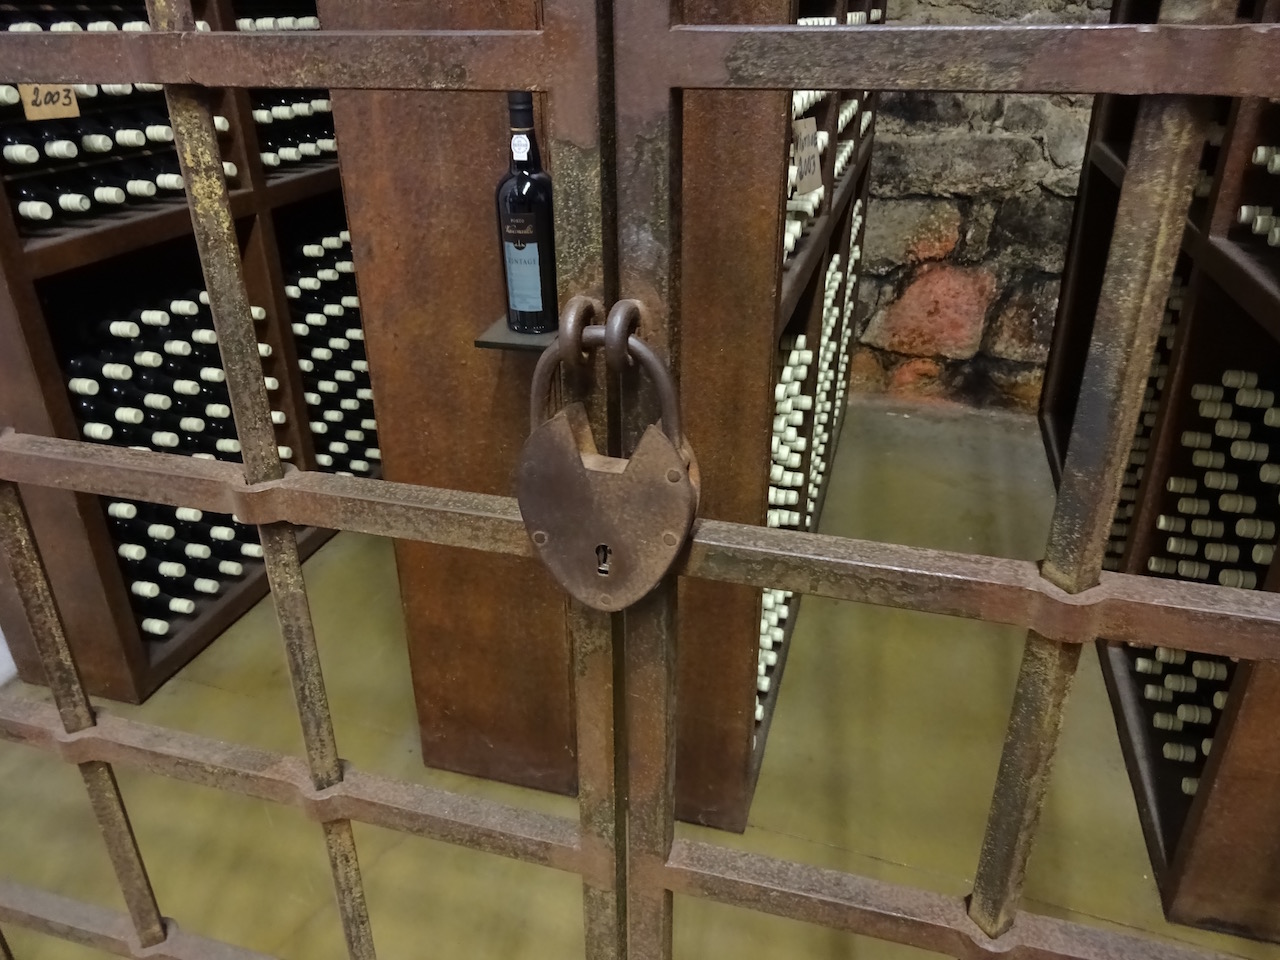 hinter Schloss und Riegel lagert der seltene Vintage Portweine bei der weiteren Reifung in der Flasche 